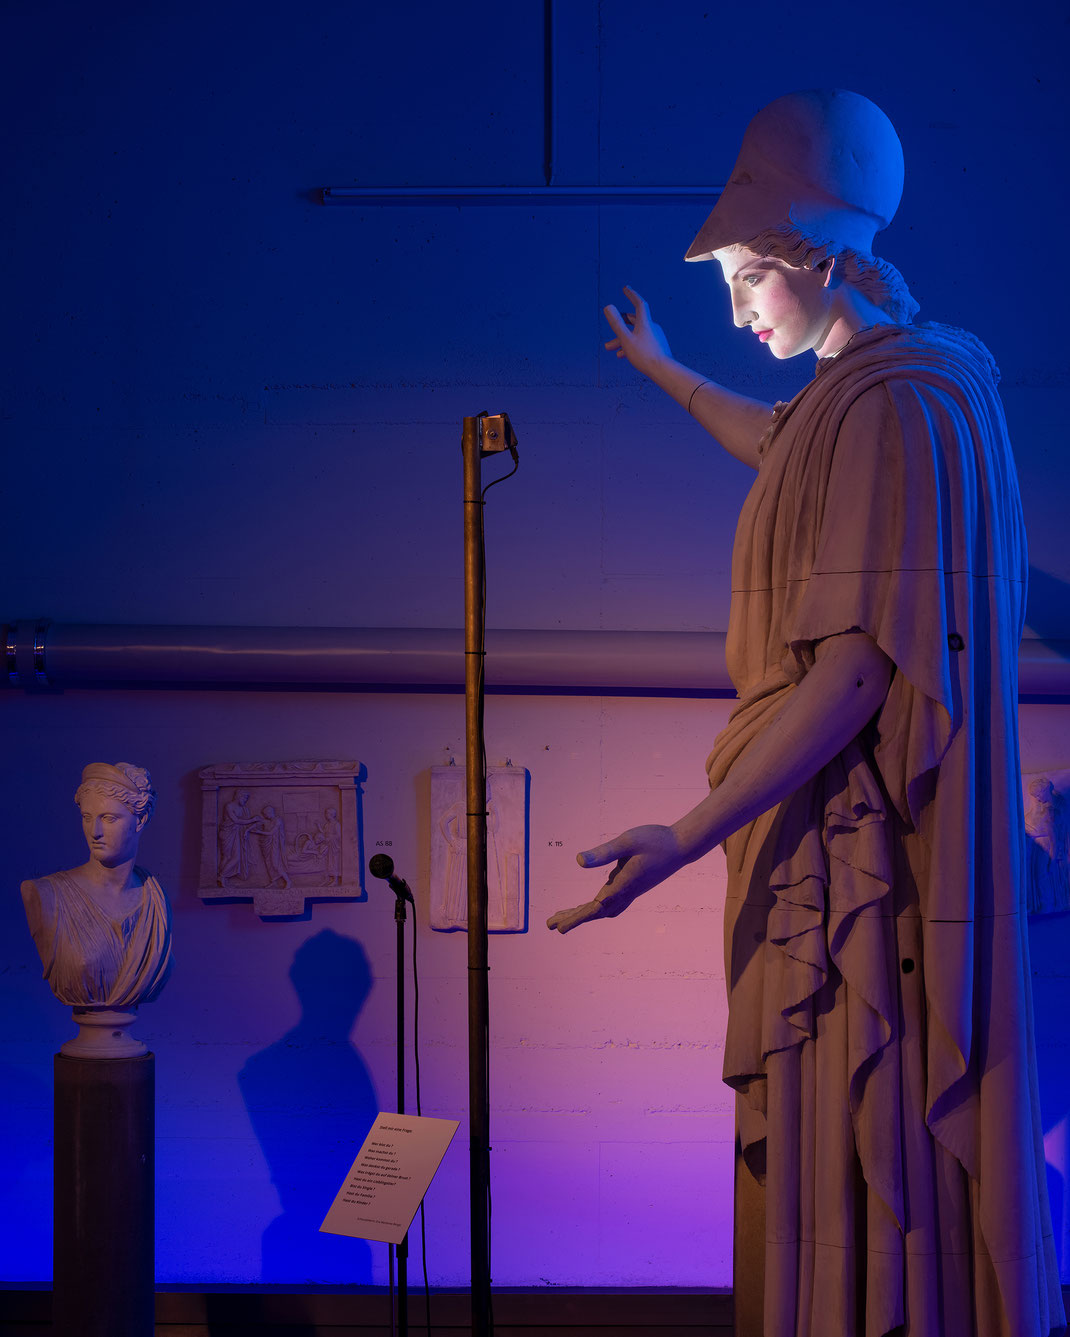 athena-parthenos-pallas-de-velletri-sculpture-grecque-parle-aux-visiteurs-art-video-interactif-reconnaissance-vocale-digitale-statue-parlante